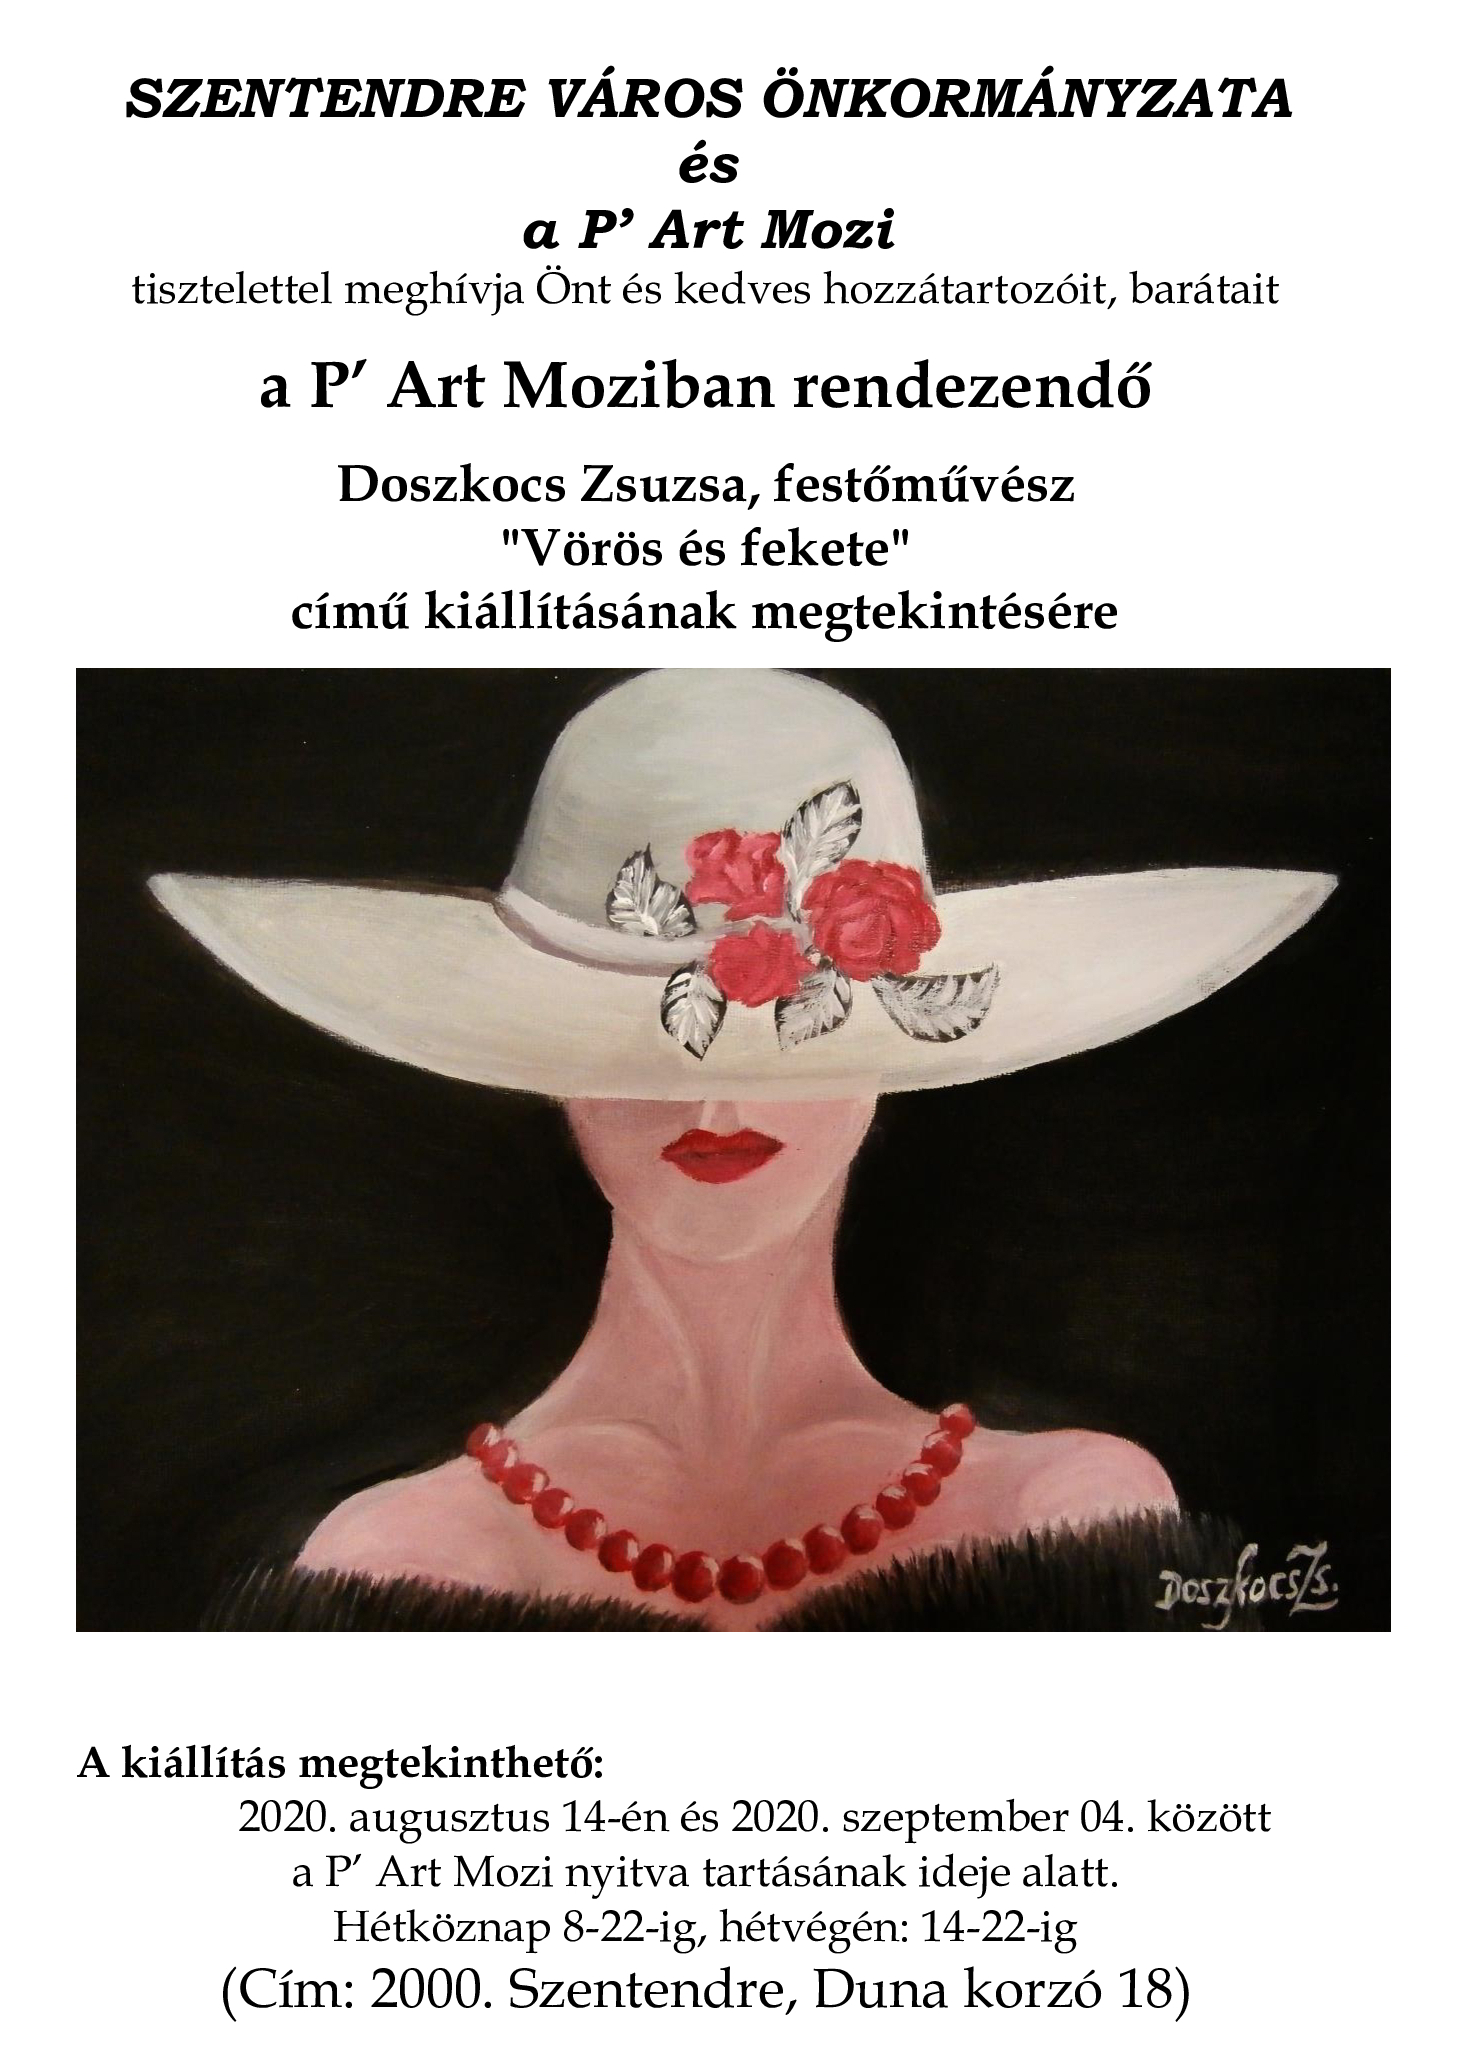 Meghívó Doszkocs Zsuzsa festőművész kiállítására